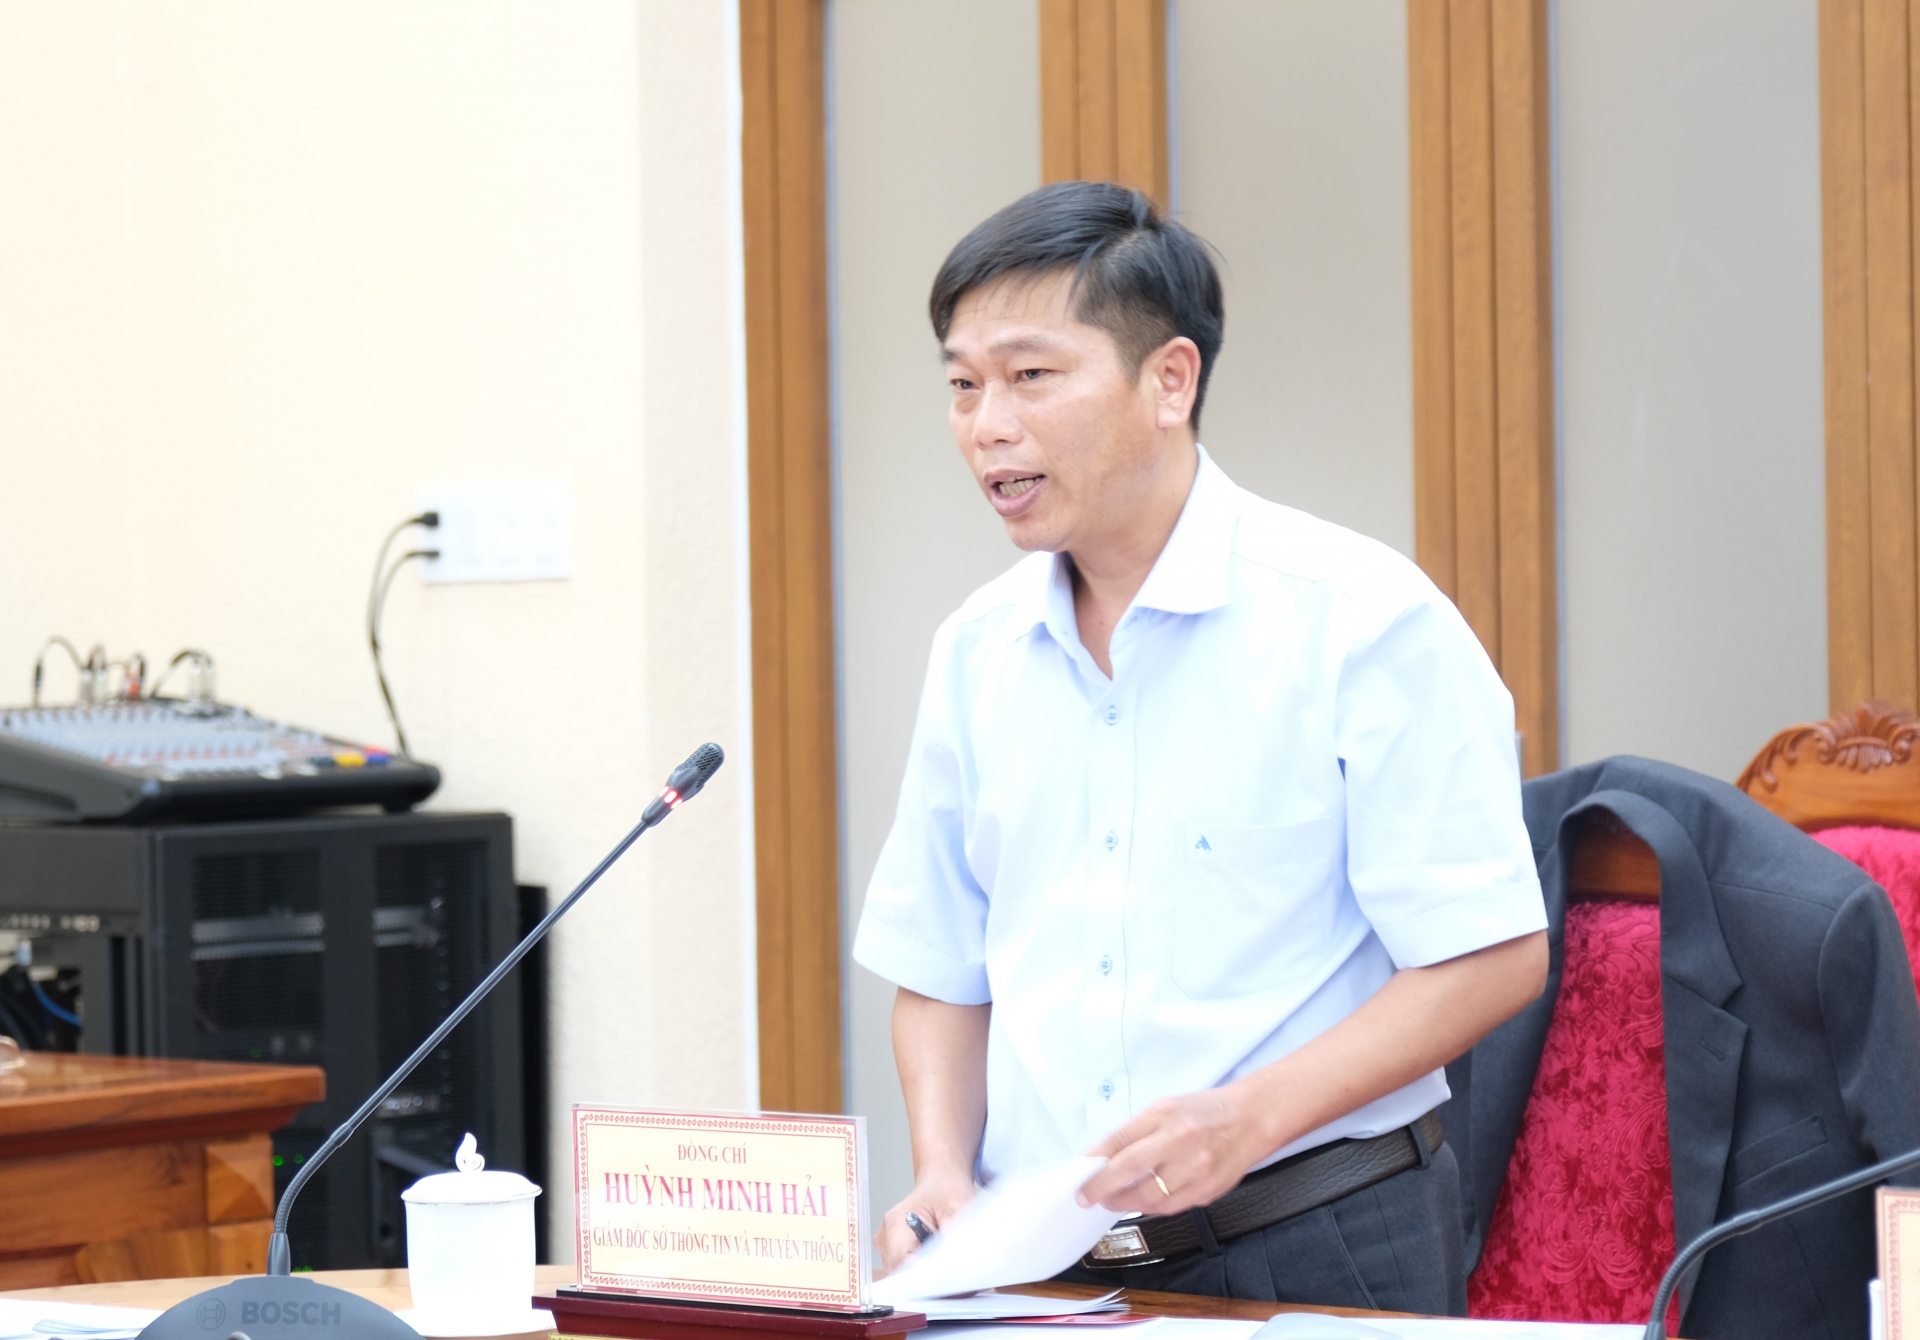 Giám đốc Sở Thông tin và Truyền thông tỉnh Lâm Đồng Huỳnh Minh phát biểu ý kiến về nội dung chuyển đổi số